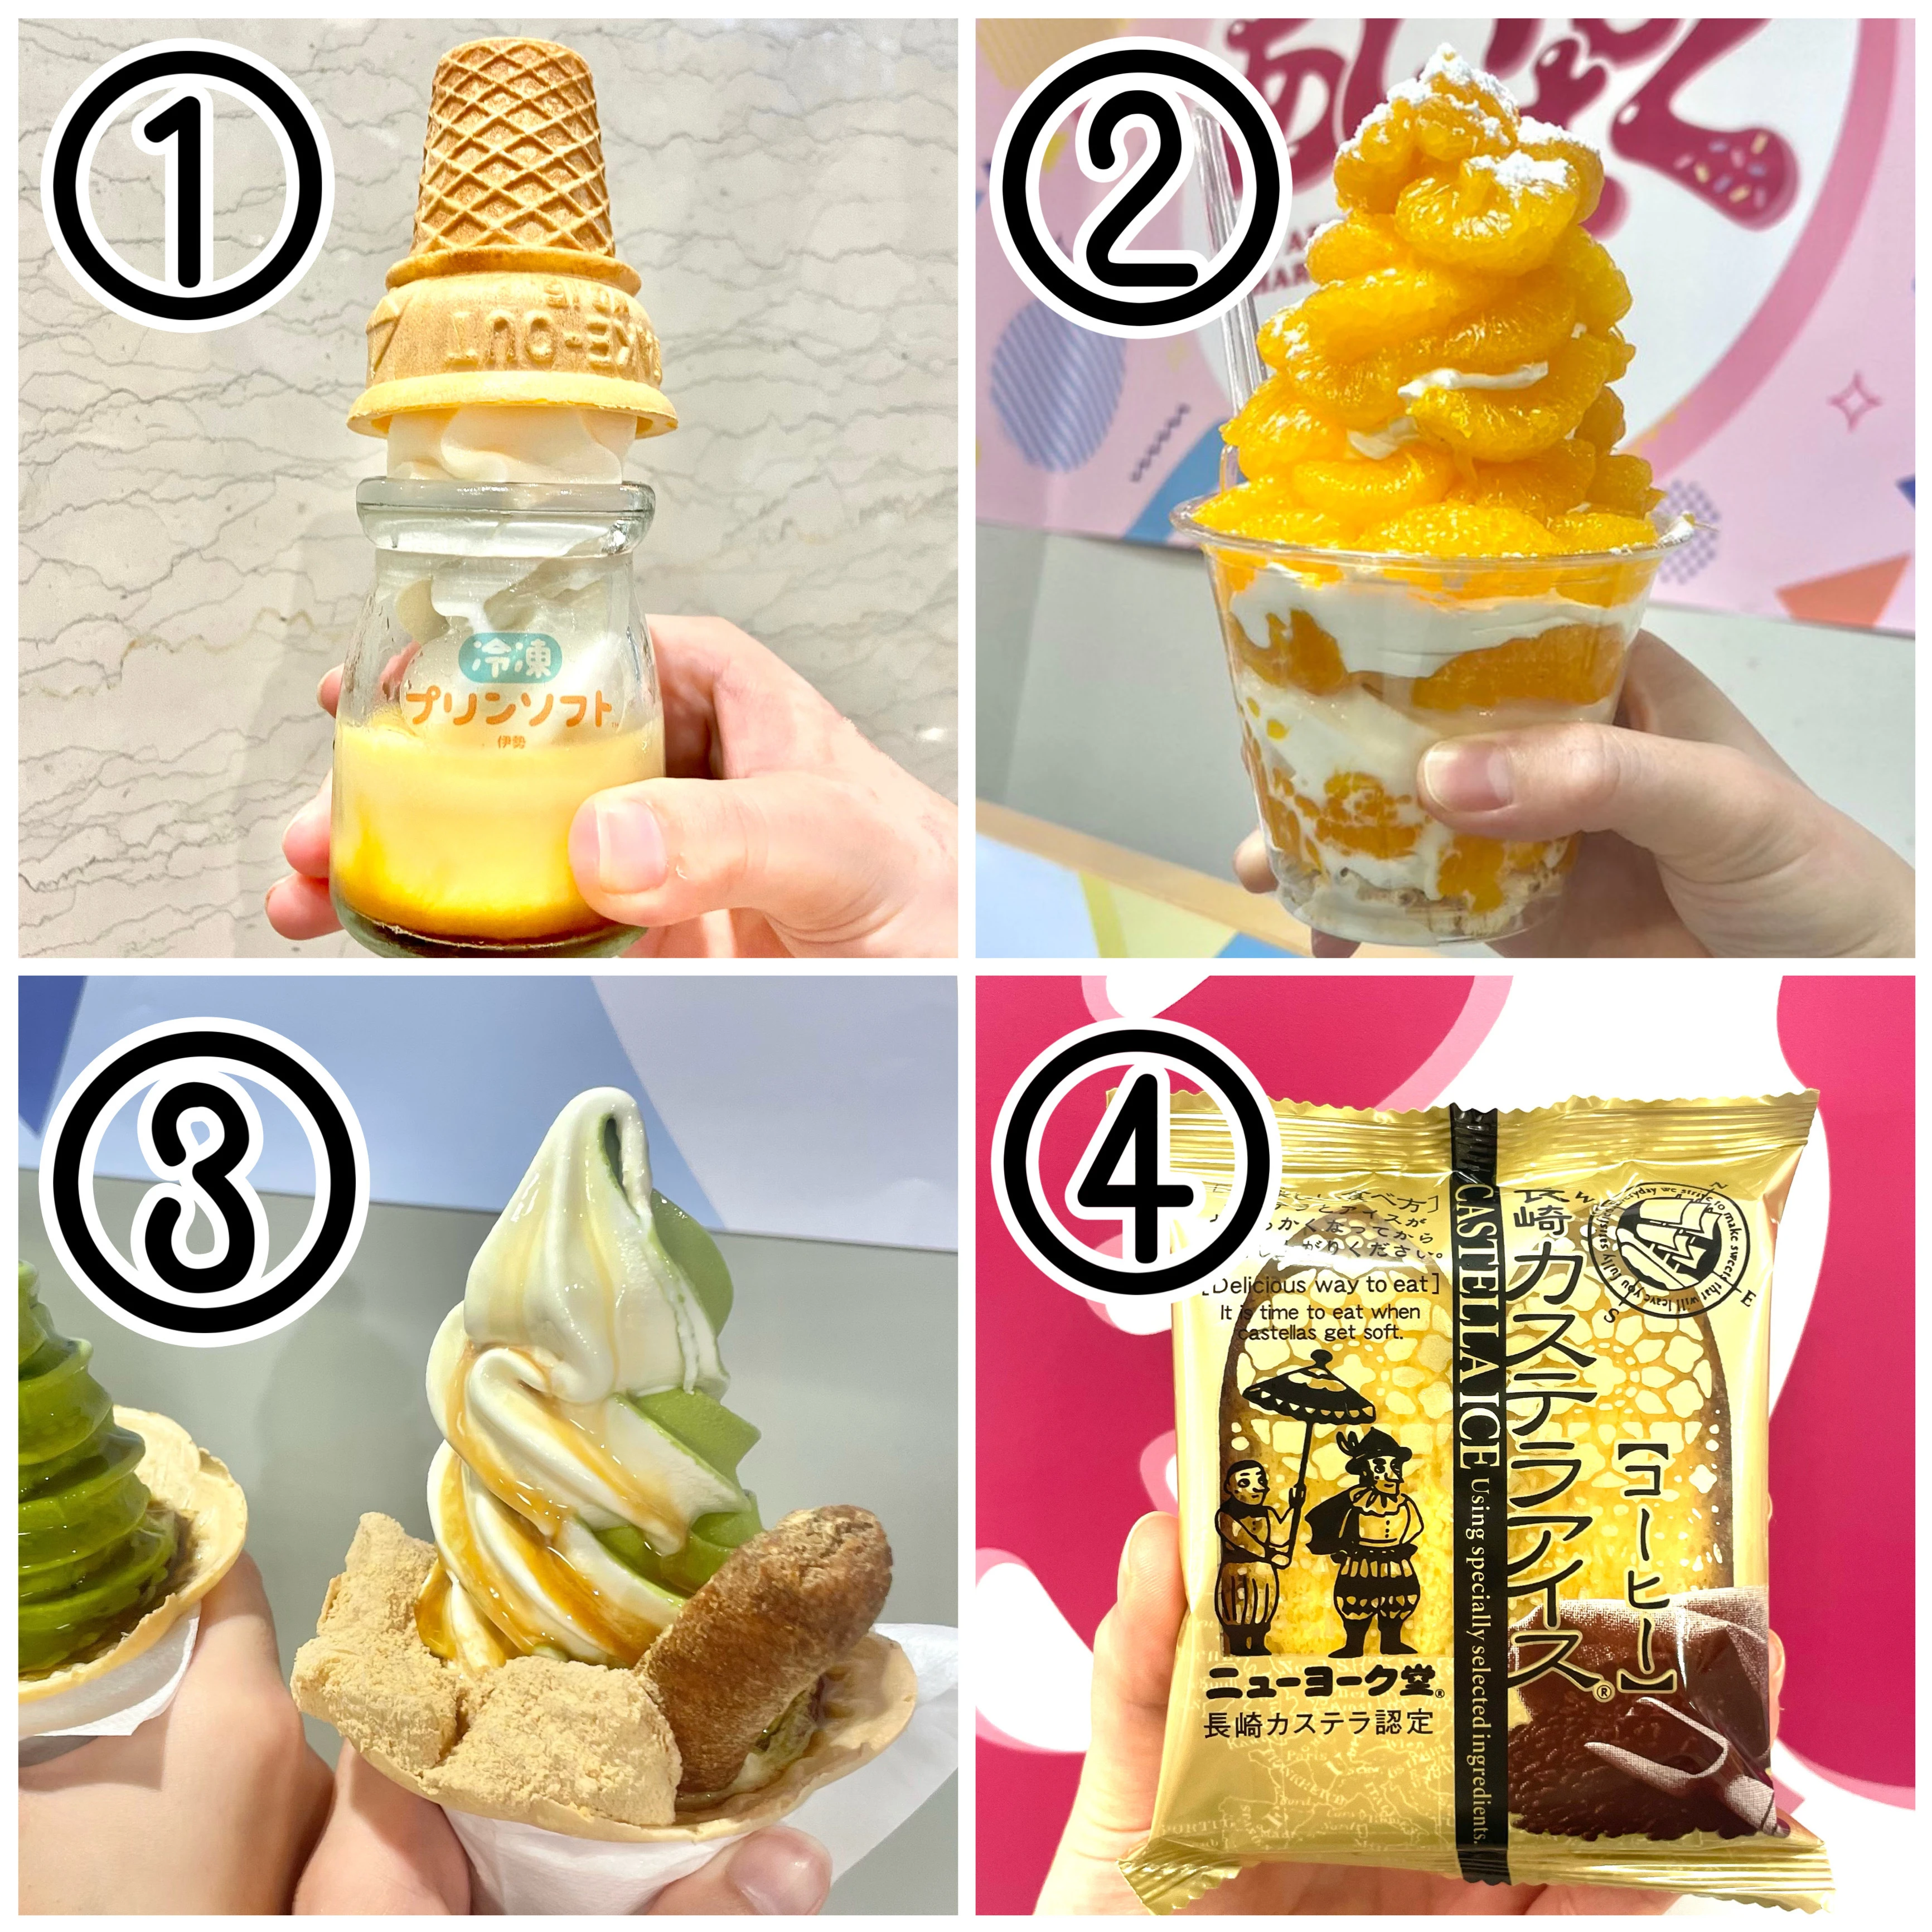 アイスクリーム万博あいぱく大阪あべのおすすめ人気アイス